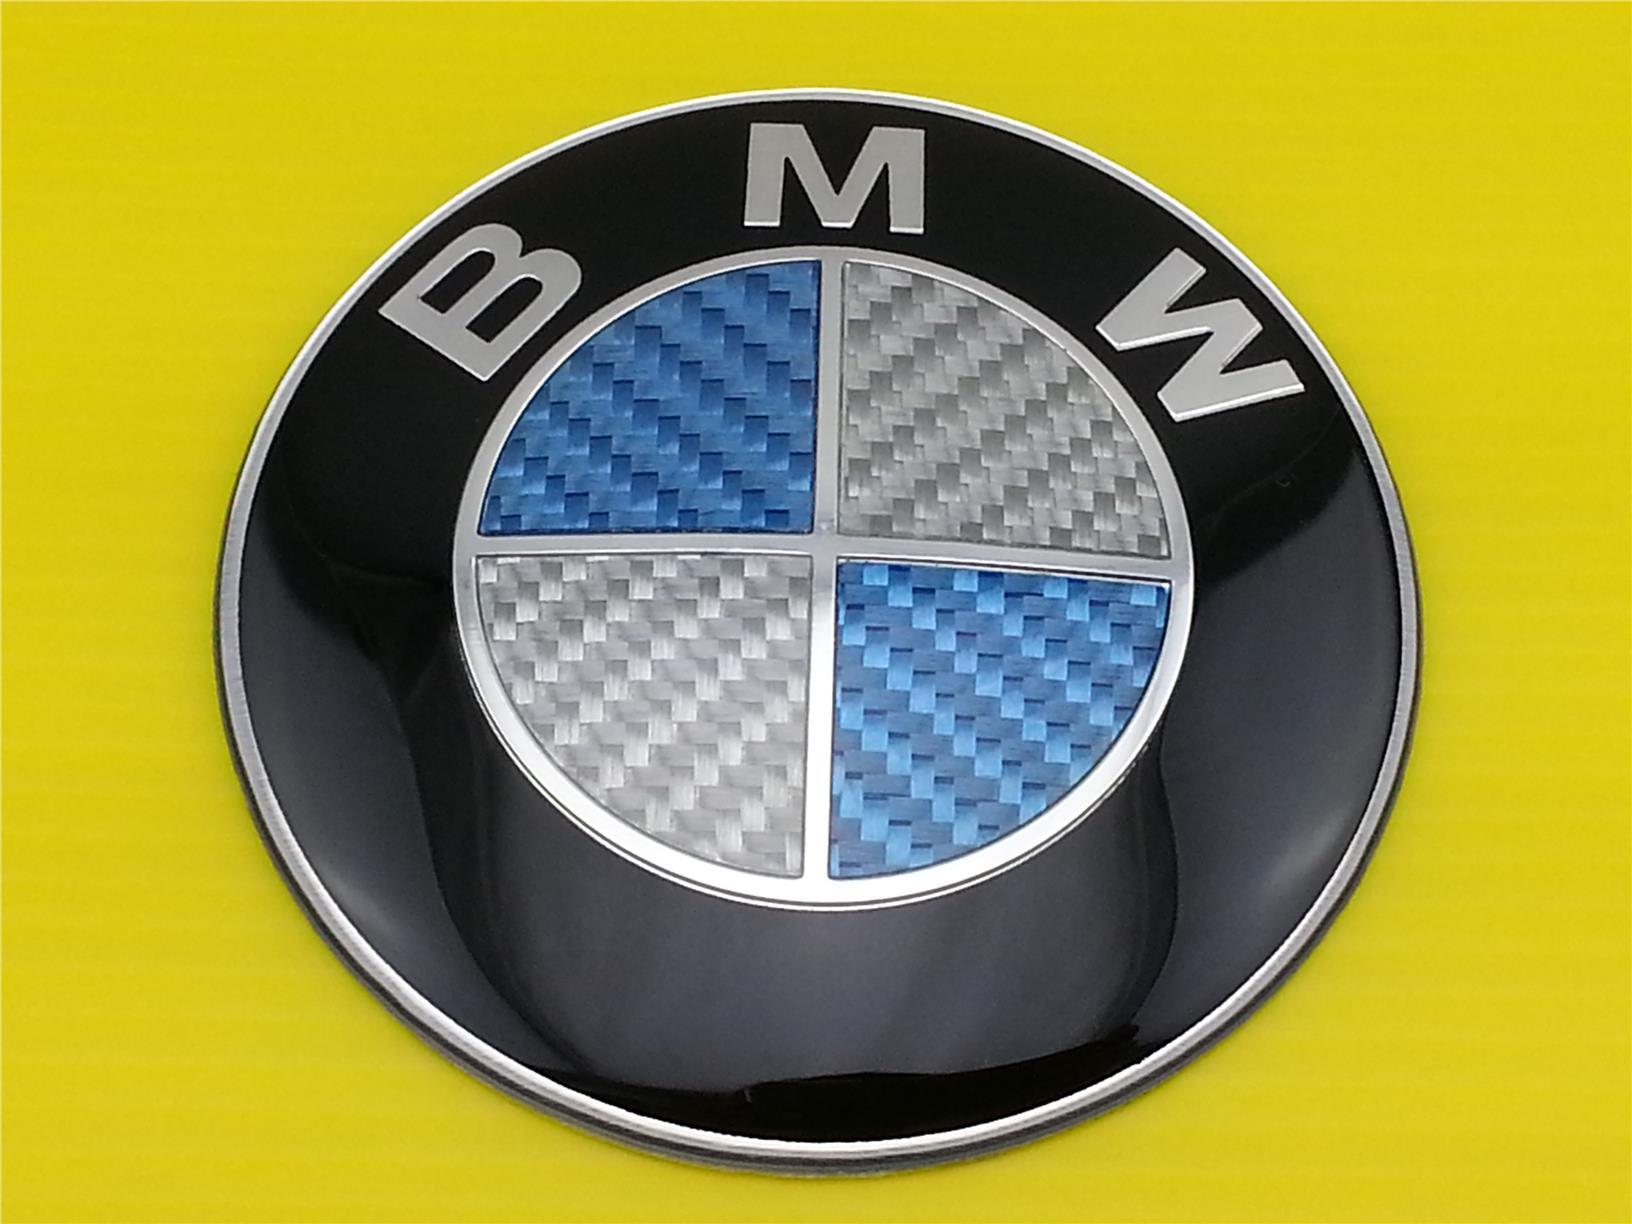 Carbon Fiber BMW Logo - New Blue & White CARBON FIBER BMW E (end 10 24 2019 8:38 AM)